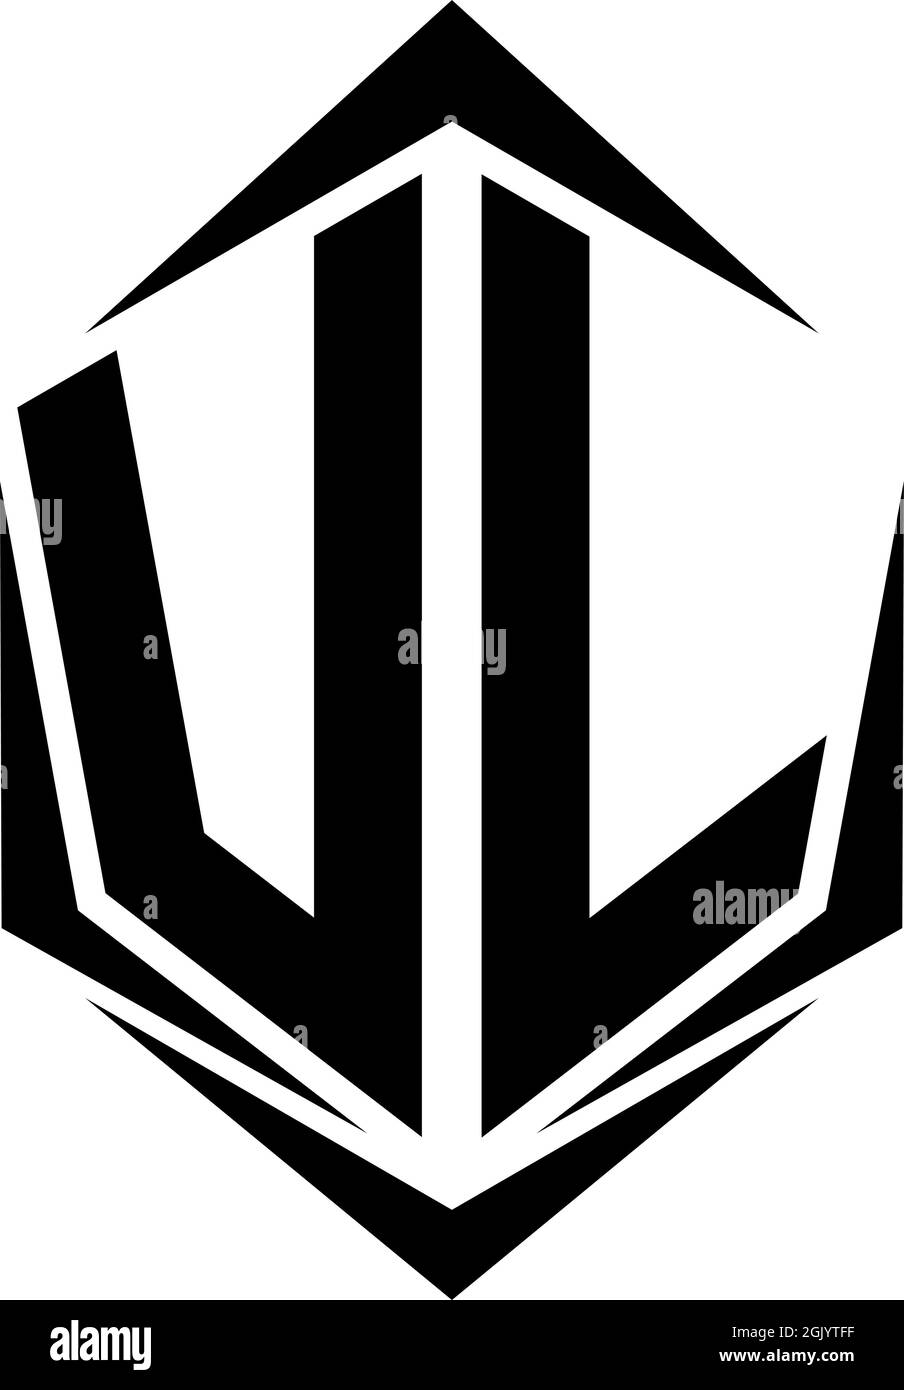 vl logo images